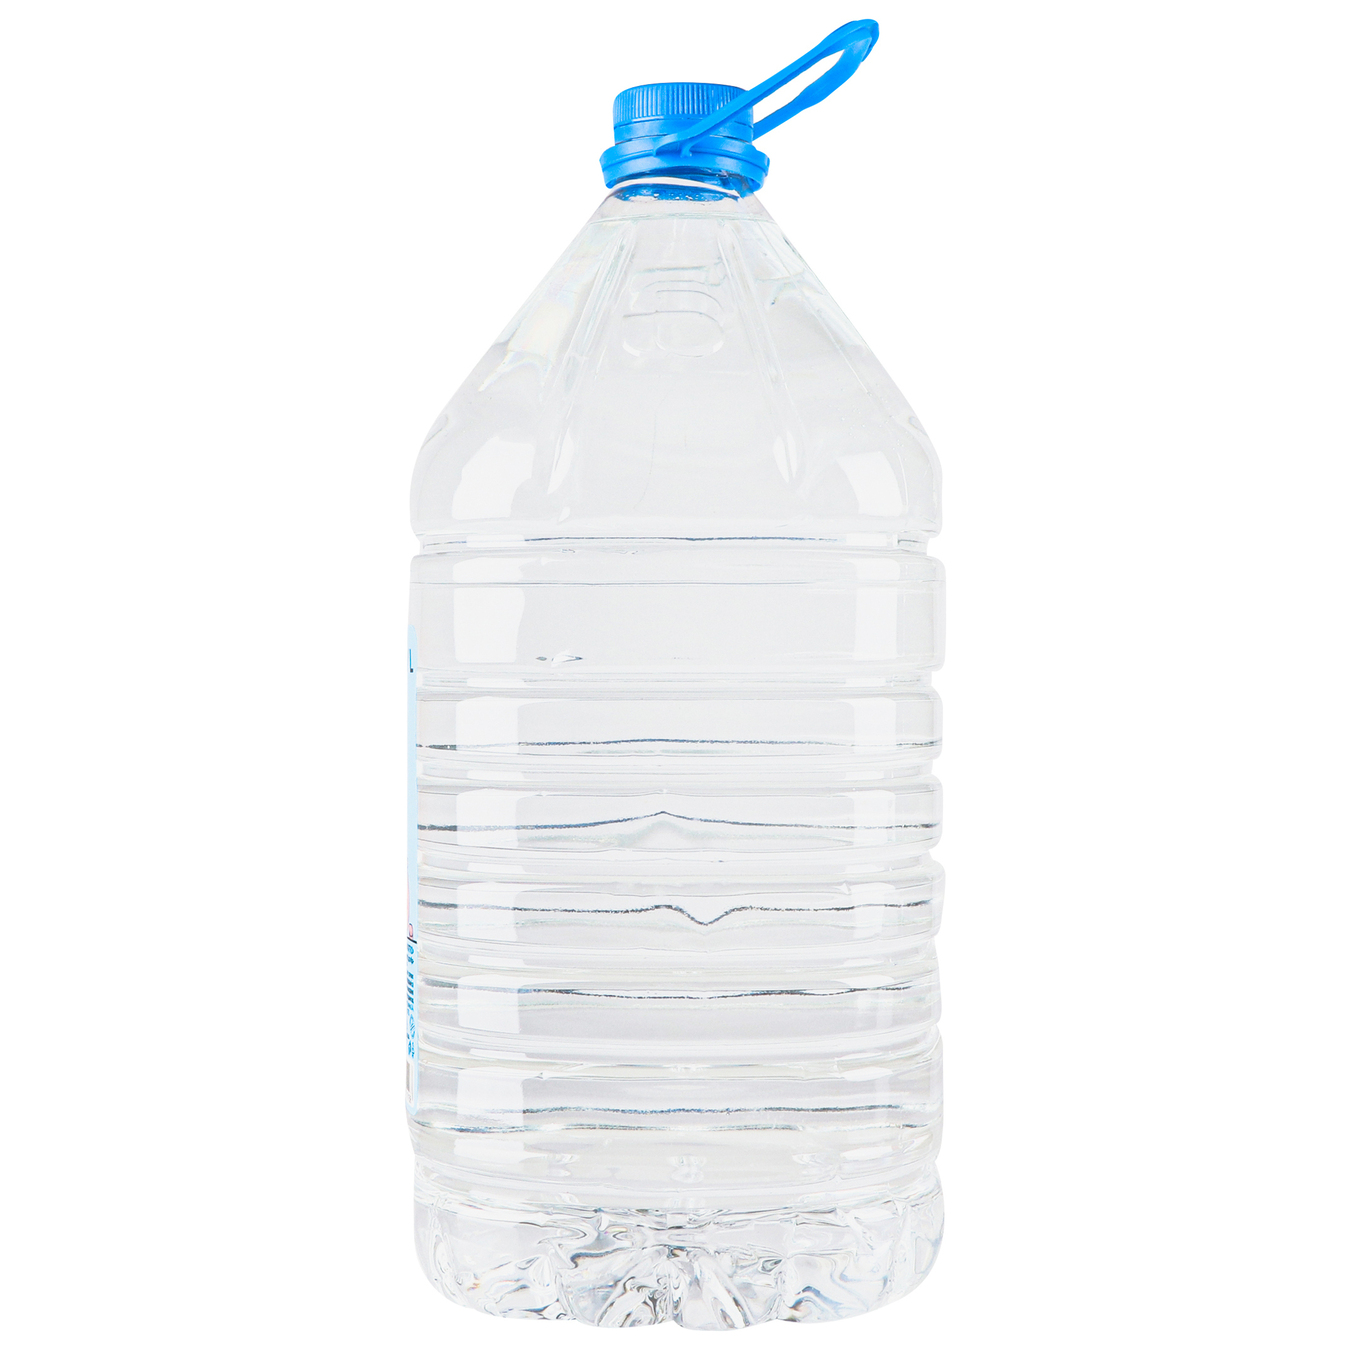 Malyatko children's drinking water 5l 7